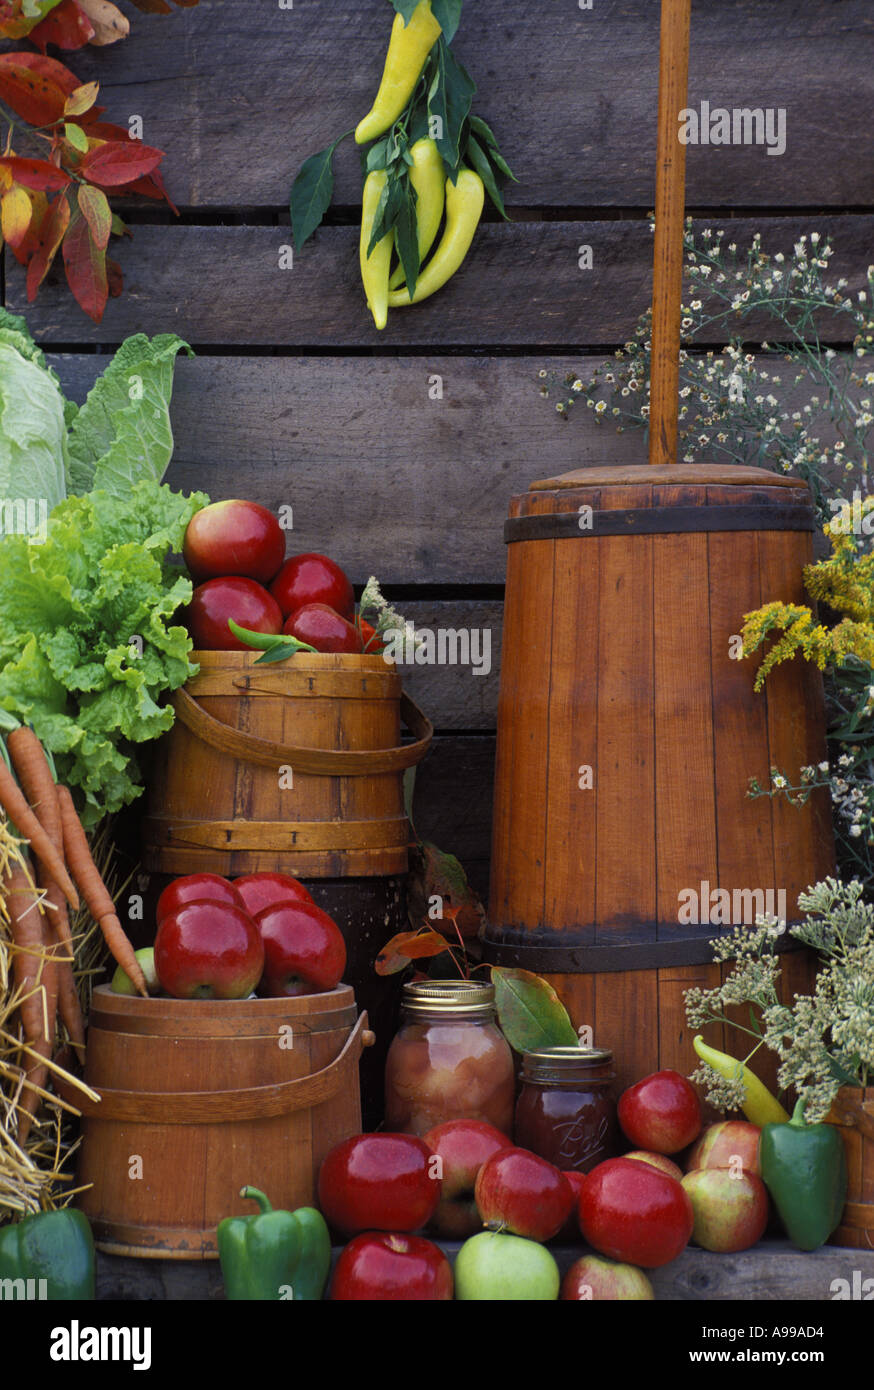 Geernteten Erzeugnisse, antikes Butterfass und Küchencontainer durch alte Scheune Wand in ein Outdoor-Display der Gemeinschaft Bauernmarkt Stockfoto